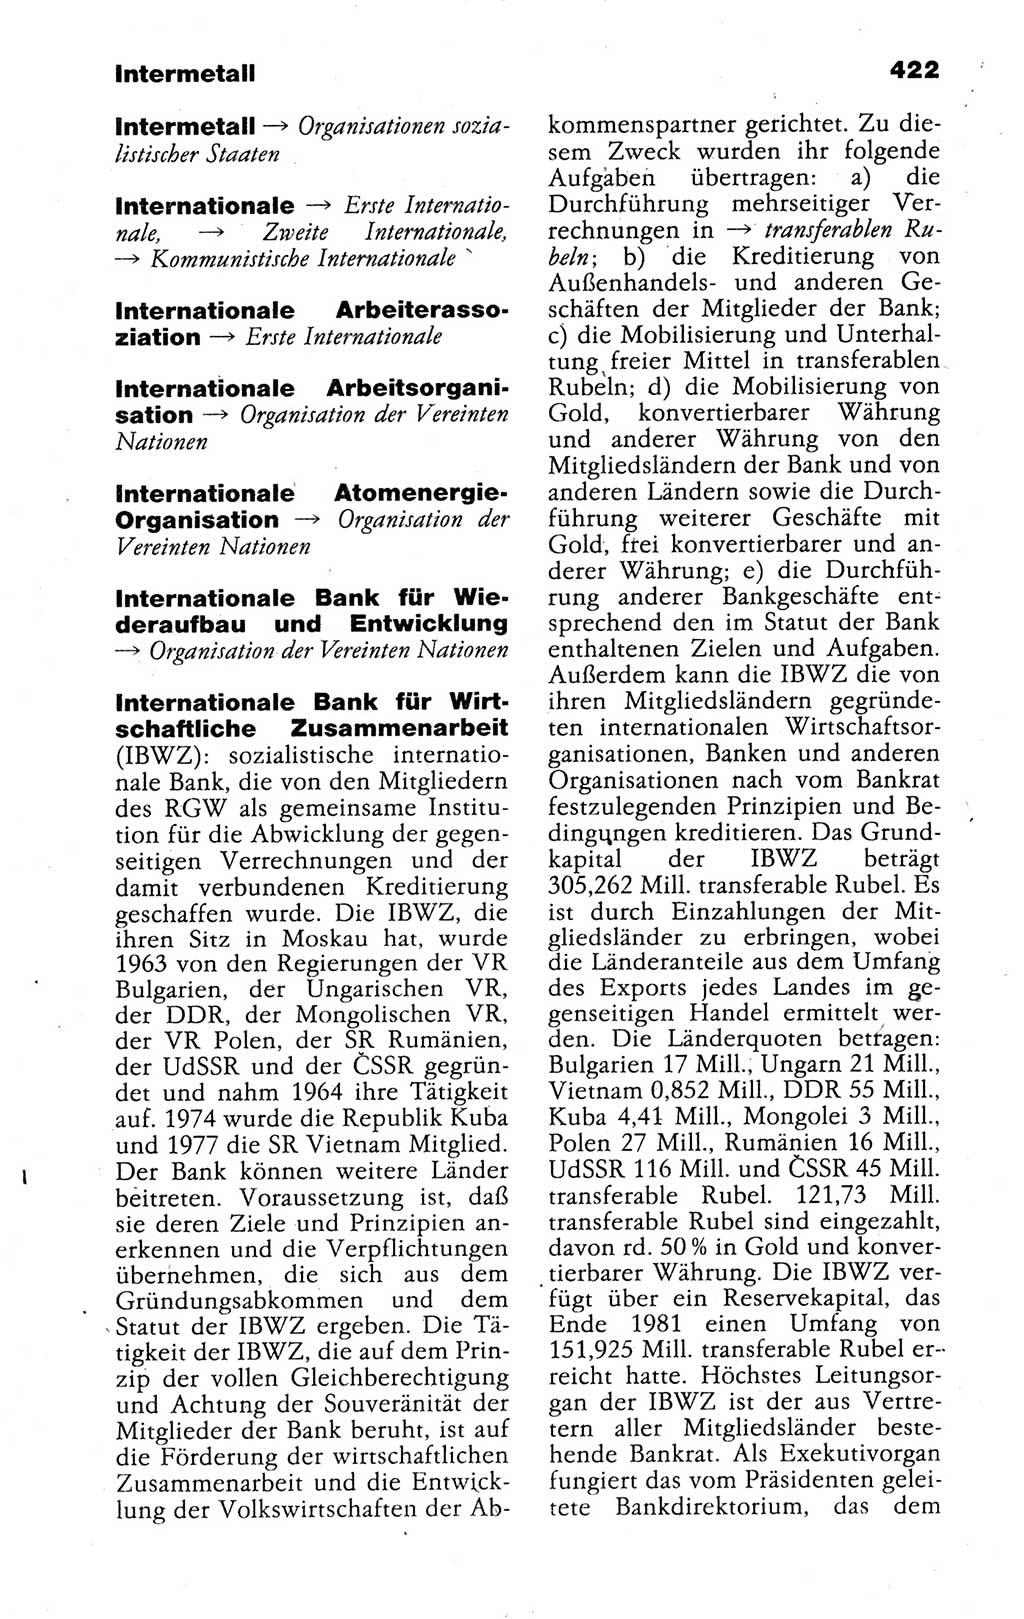 Kleines politisches Wörterbuch [Deutsche Demokratische Republik (DDR)] 1988, Seite 422 (Kl. pol. Wb. DDR 1988, S. 422)